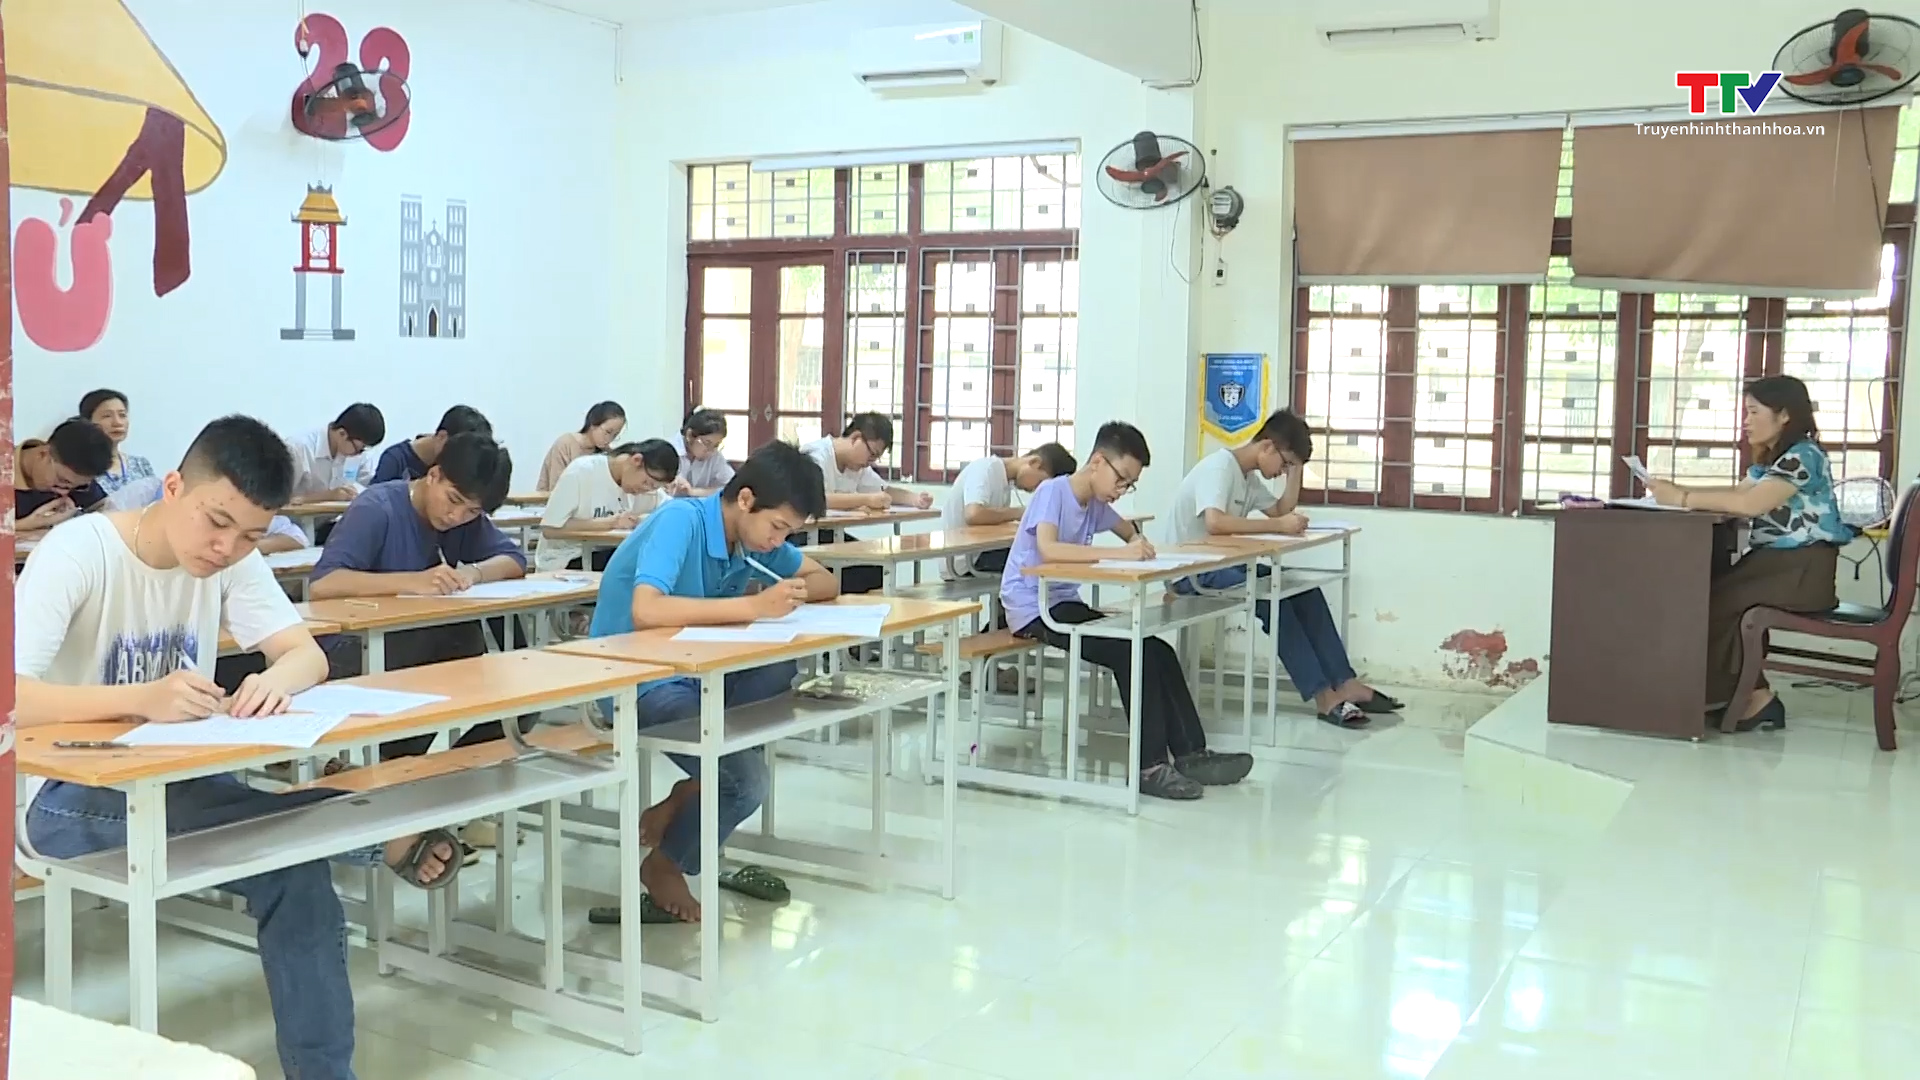 1 thí sinh vi phạm quy chế trong ngày thi đầu tiên vào lớp 10 trường Trung học phổ thông chuyên Lam Sơn - Ảnh 2.